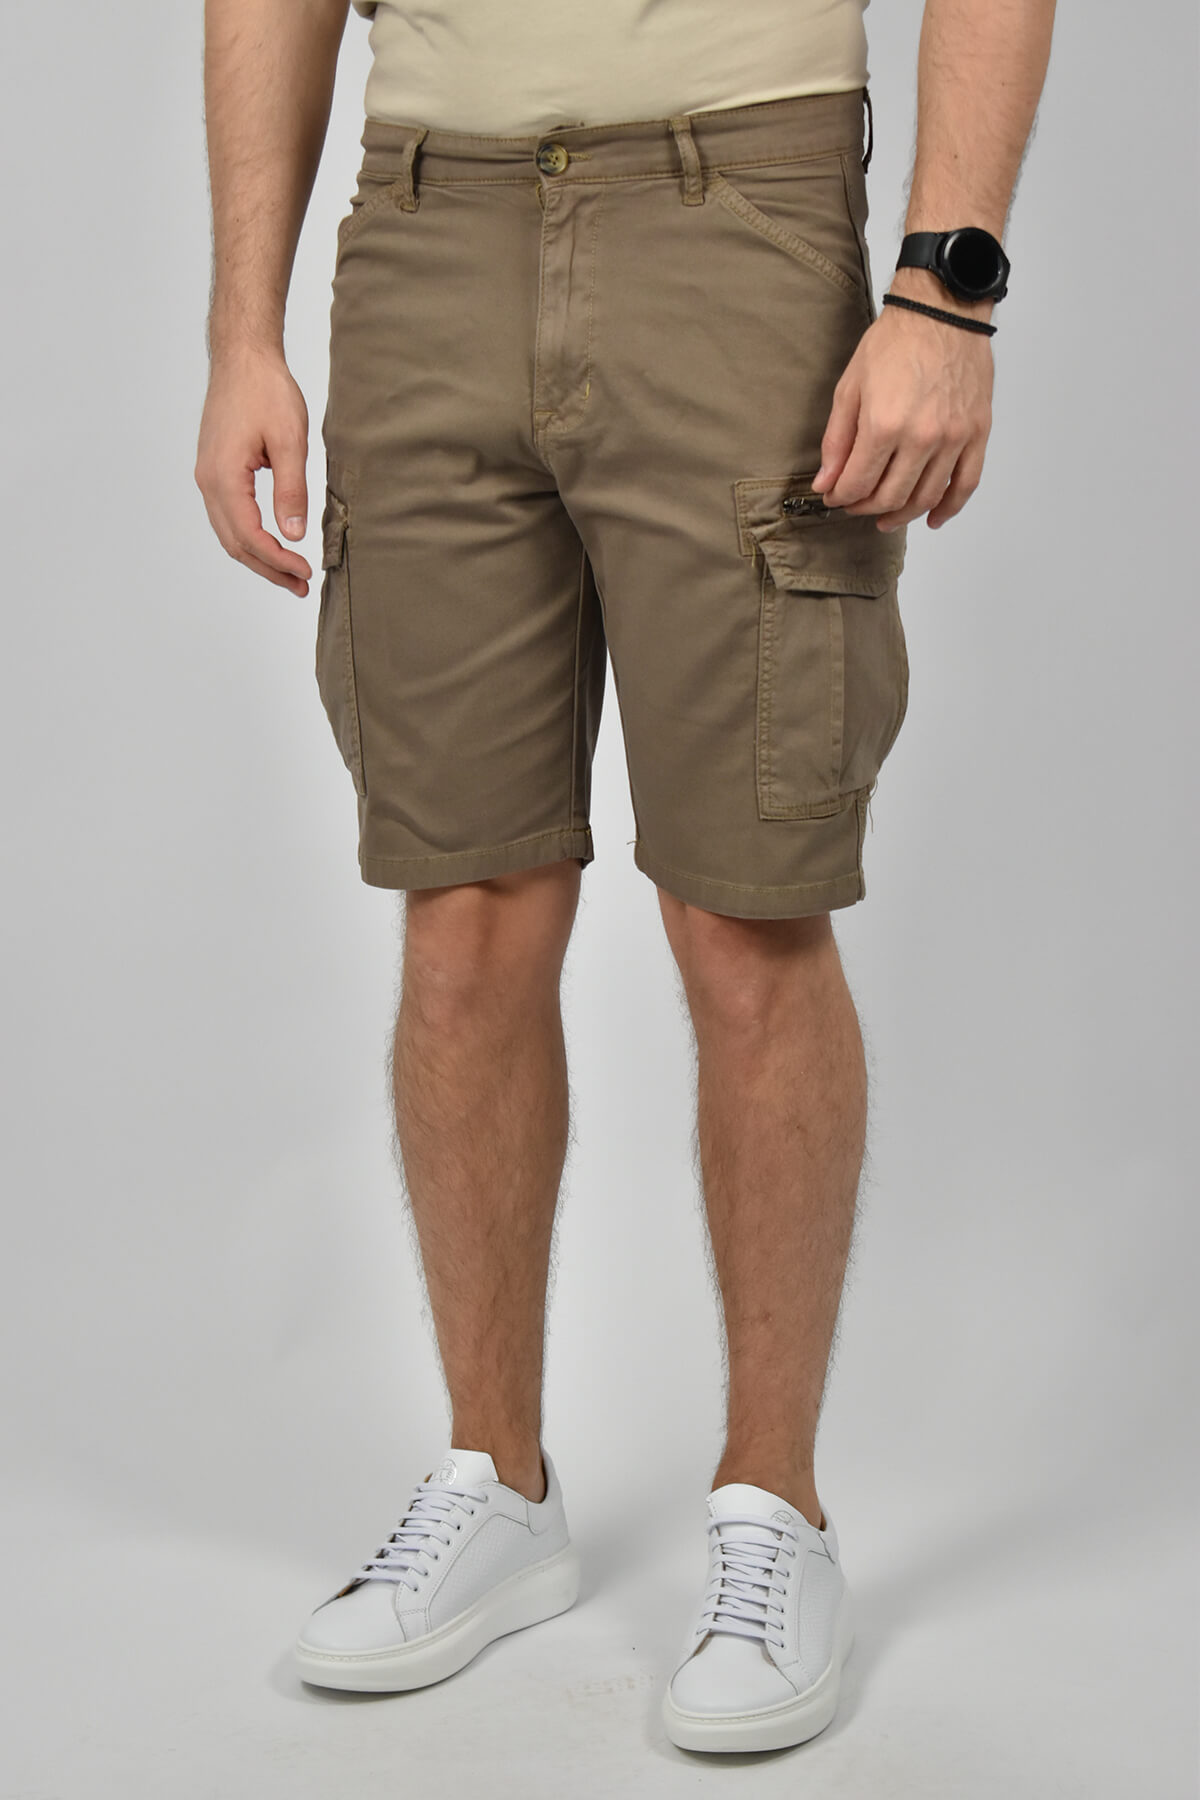 Marcus Kasper Cargo Shorts